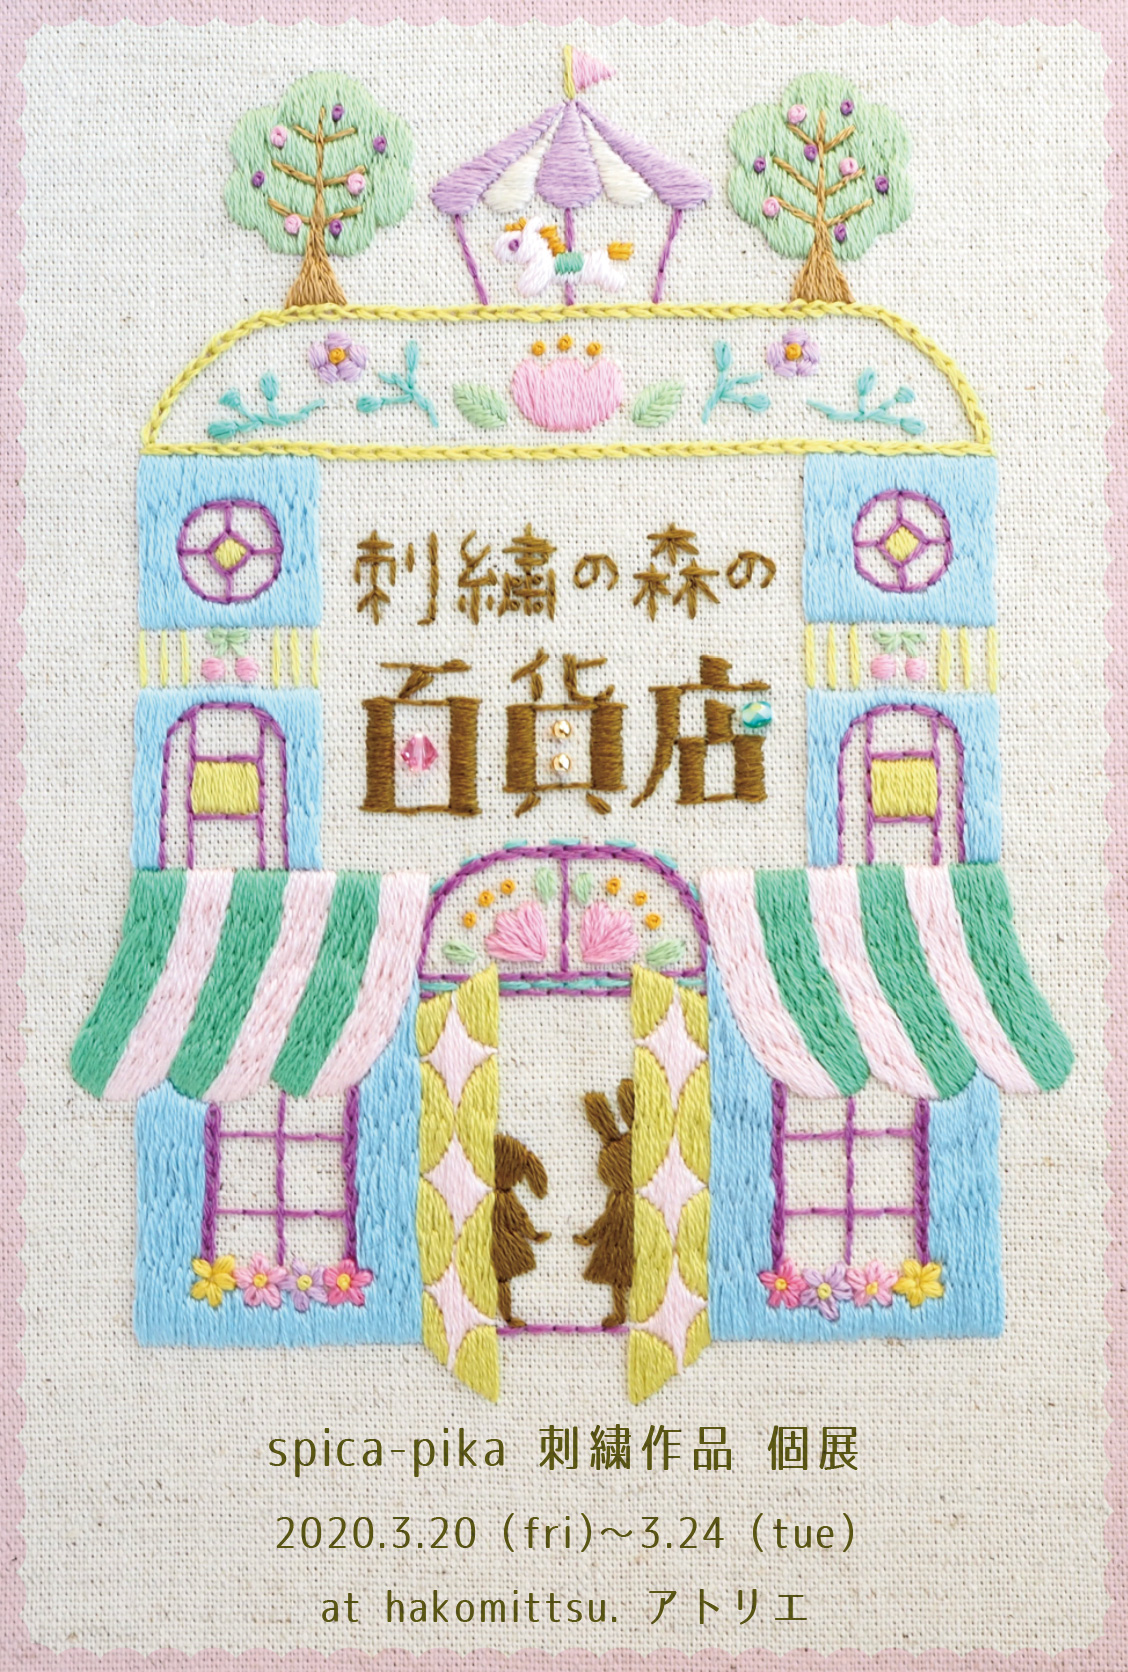 個展『刺繍の森の百貨店』を開催します♪【3/20〜24・大阪中崎町】